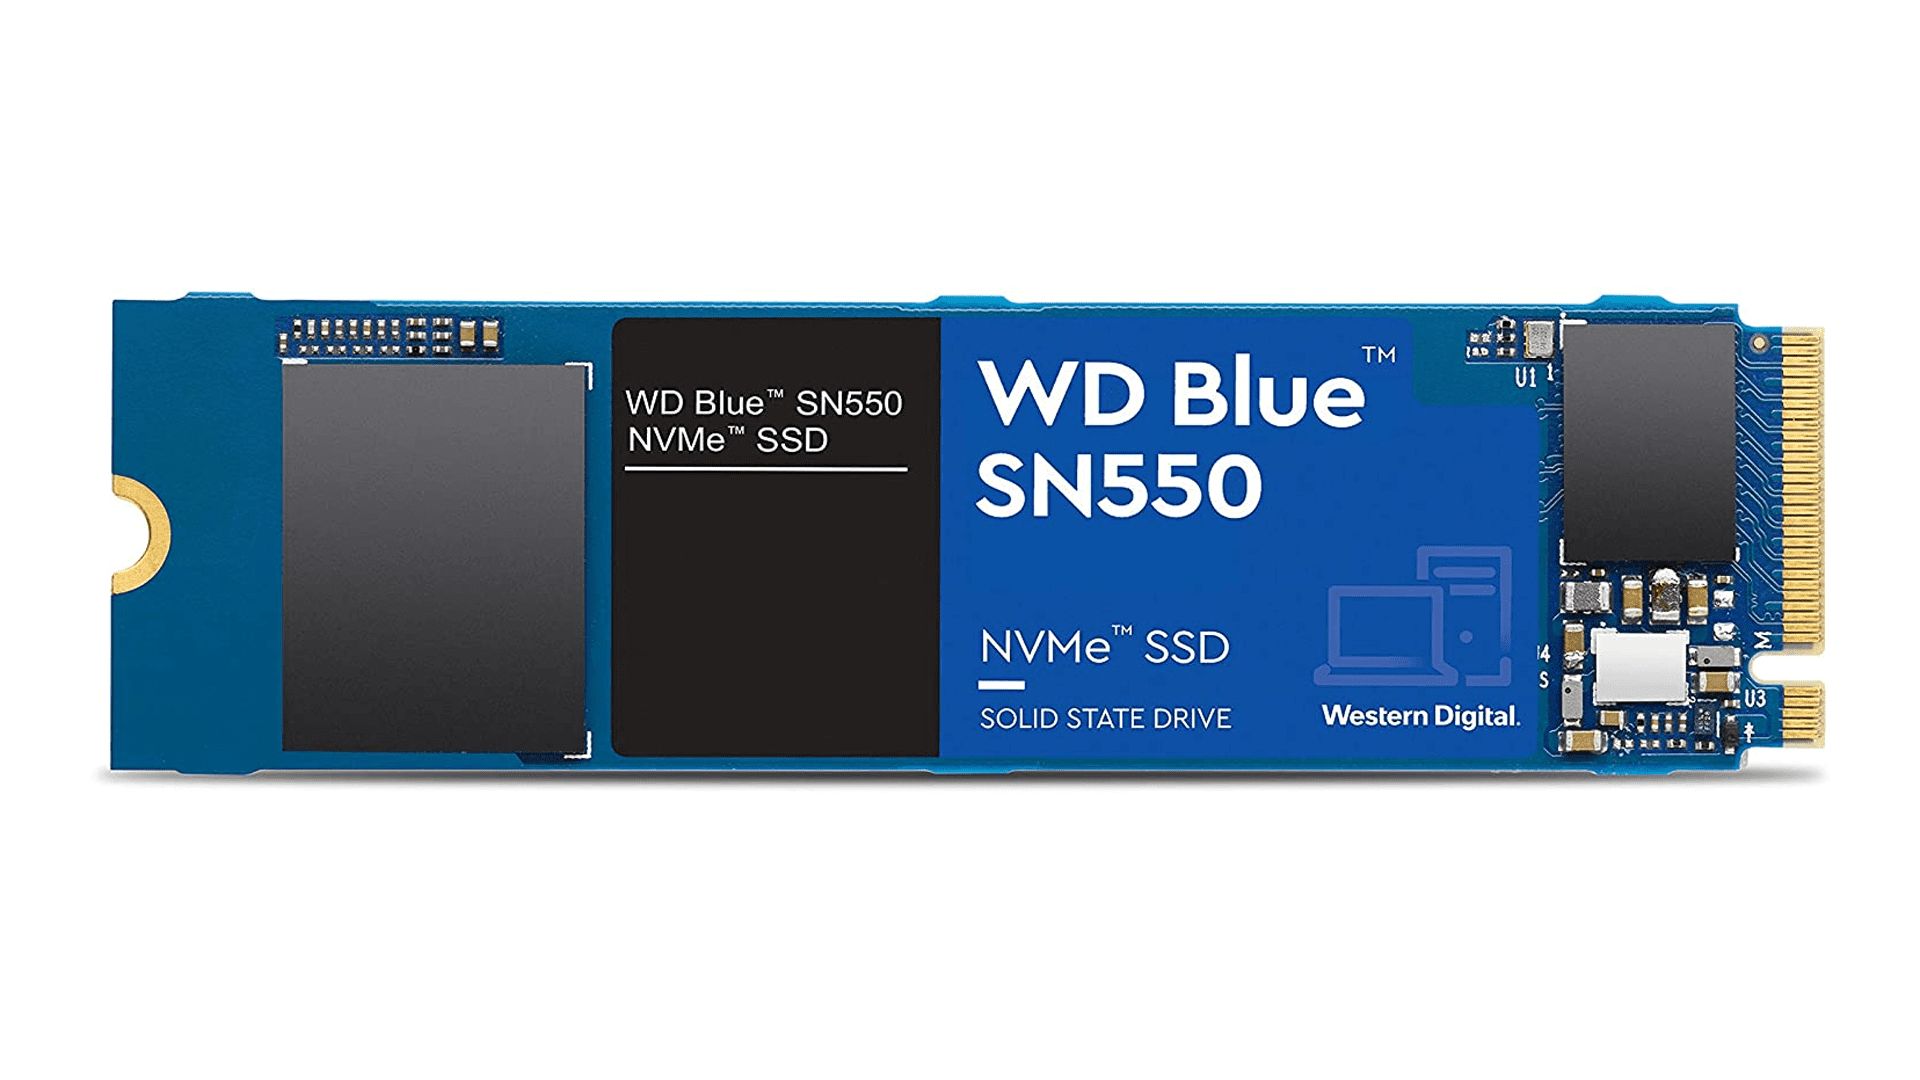 Model baru SSD Western Digital ini dapat berjalan 50% lebih lambat — Inilah alasannya